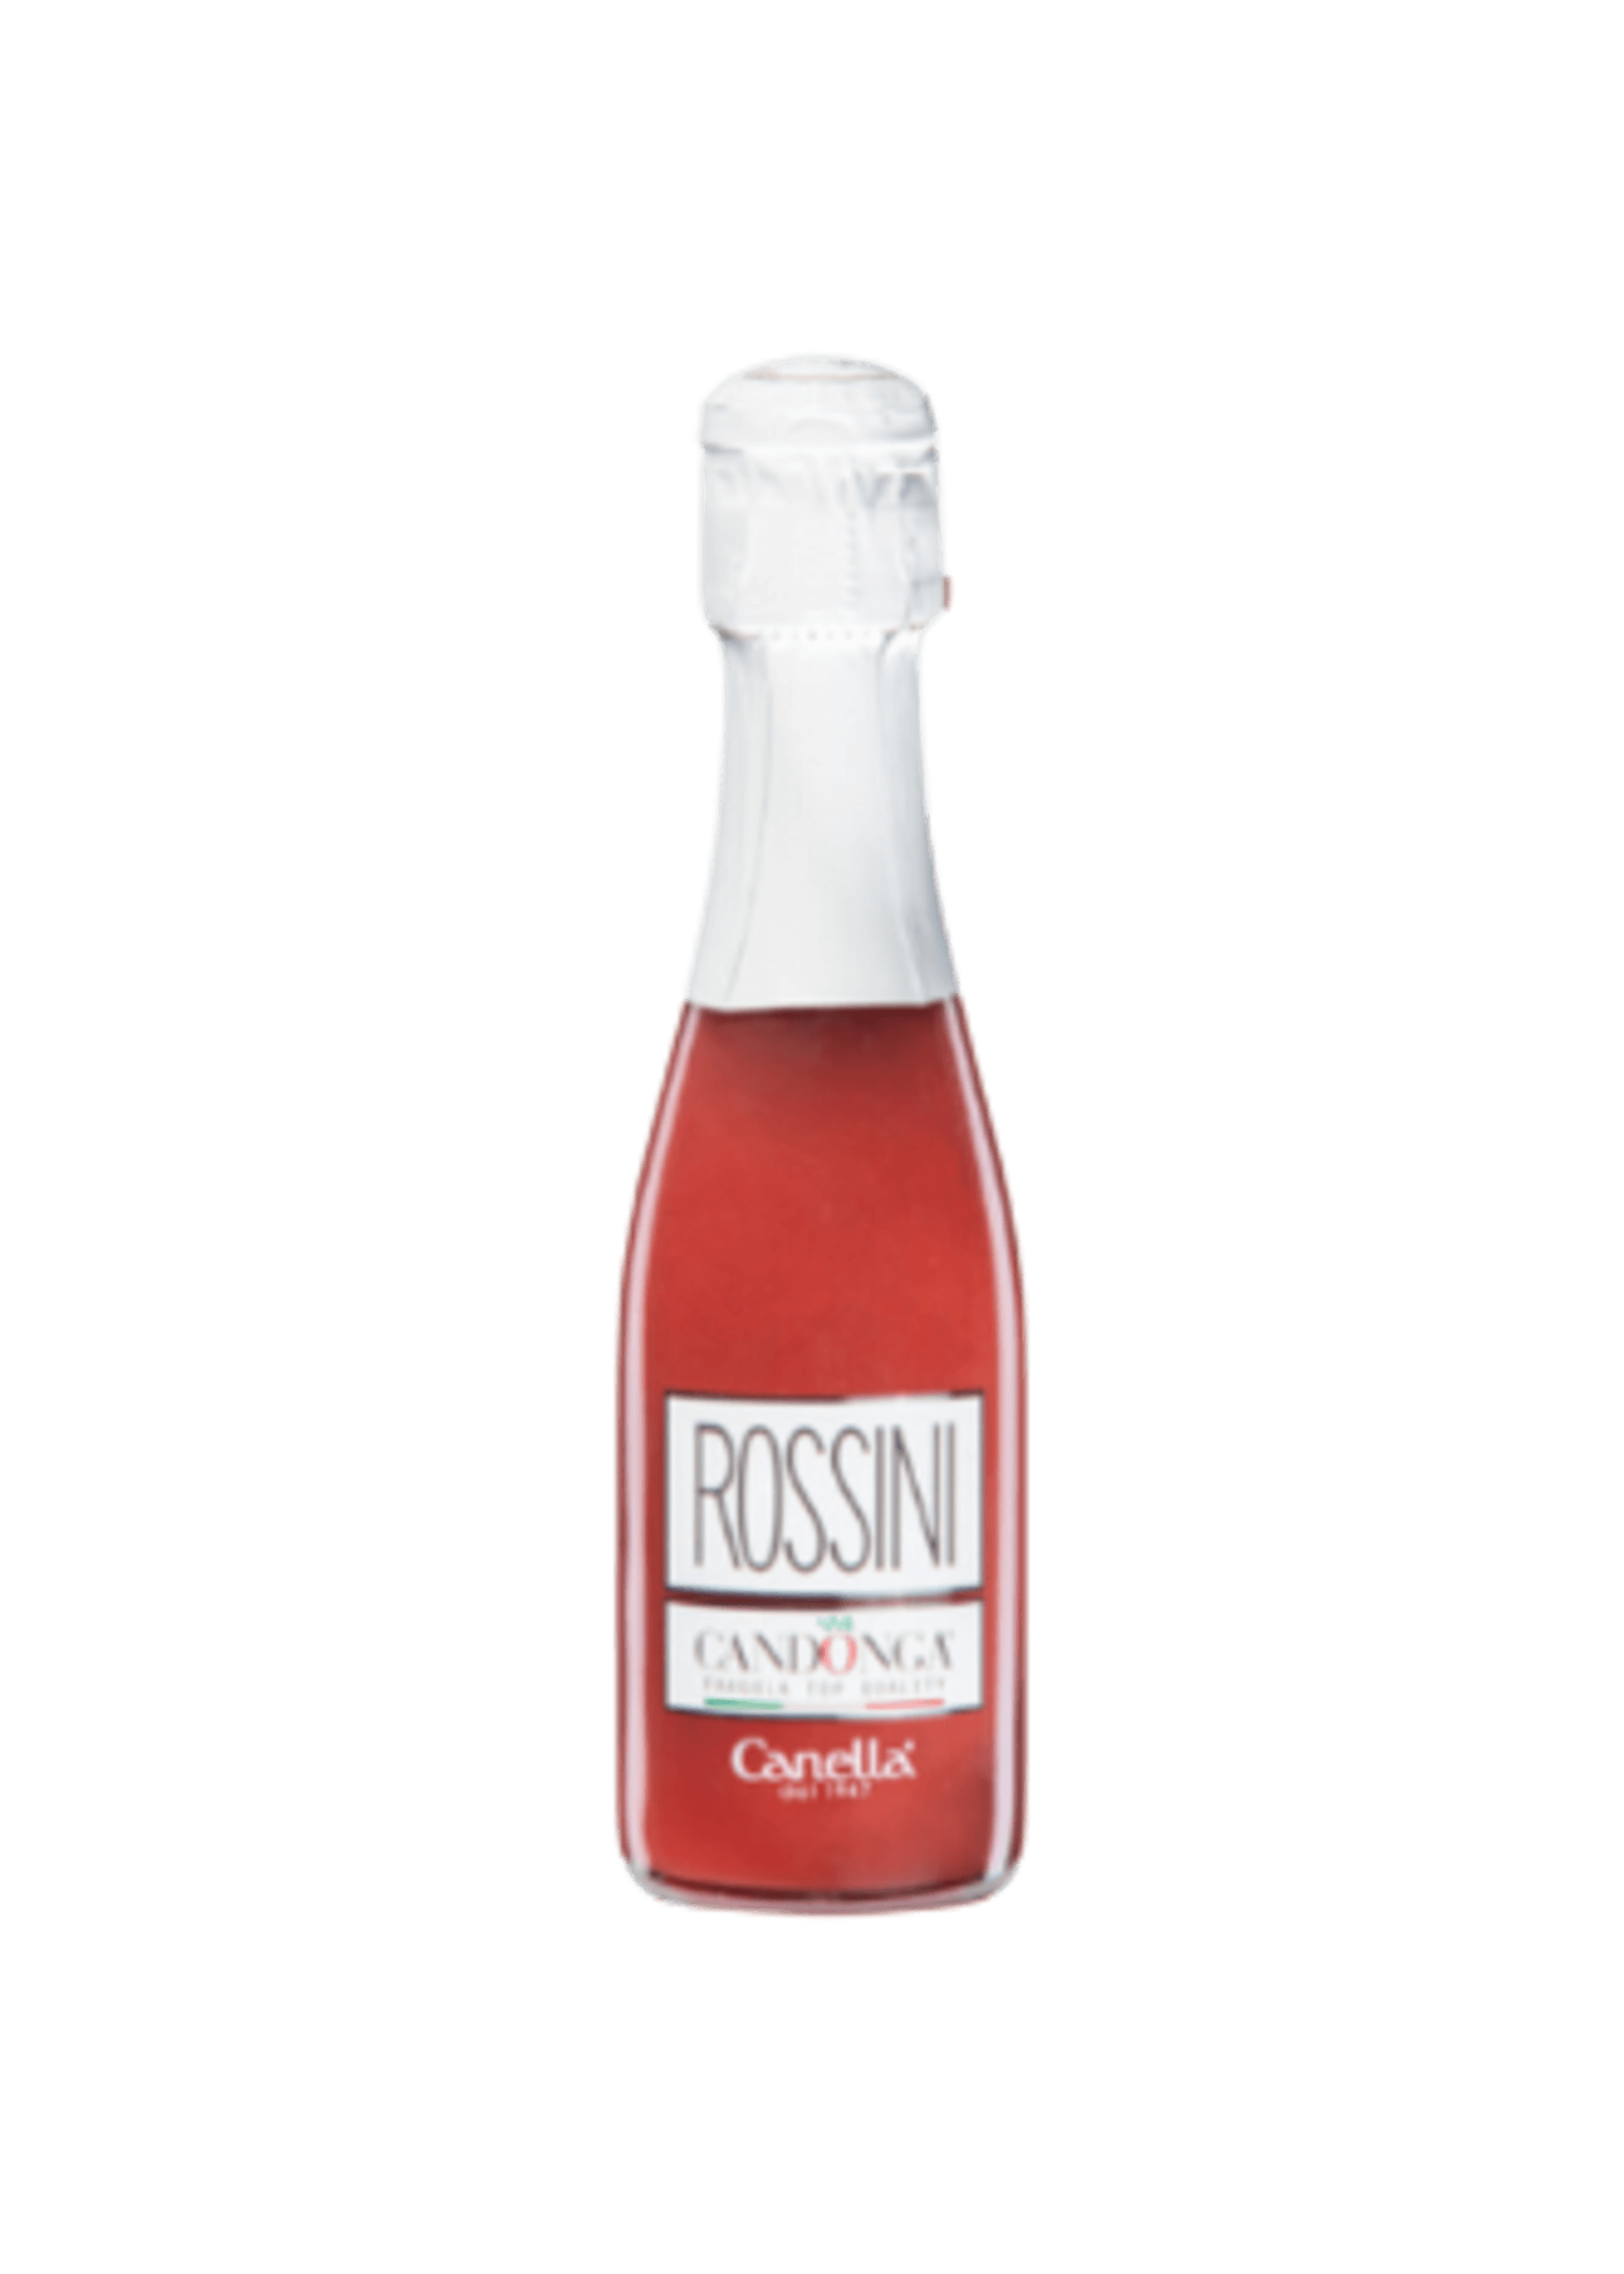 Canella Rossini Cocktail with Italian strawberries Piccolo 20cl